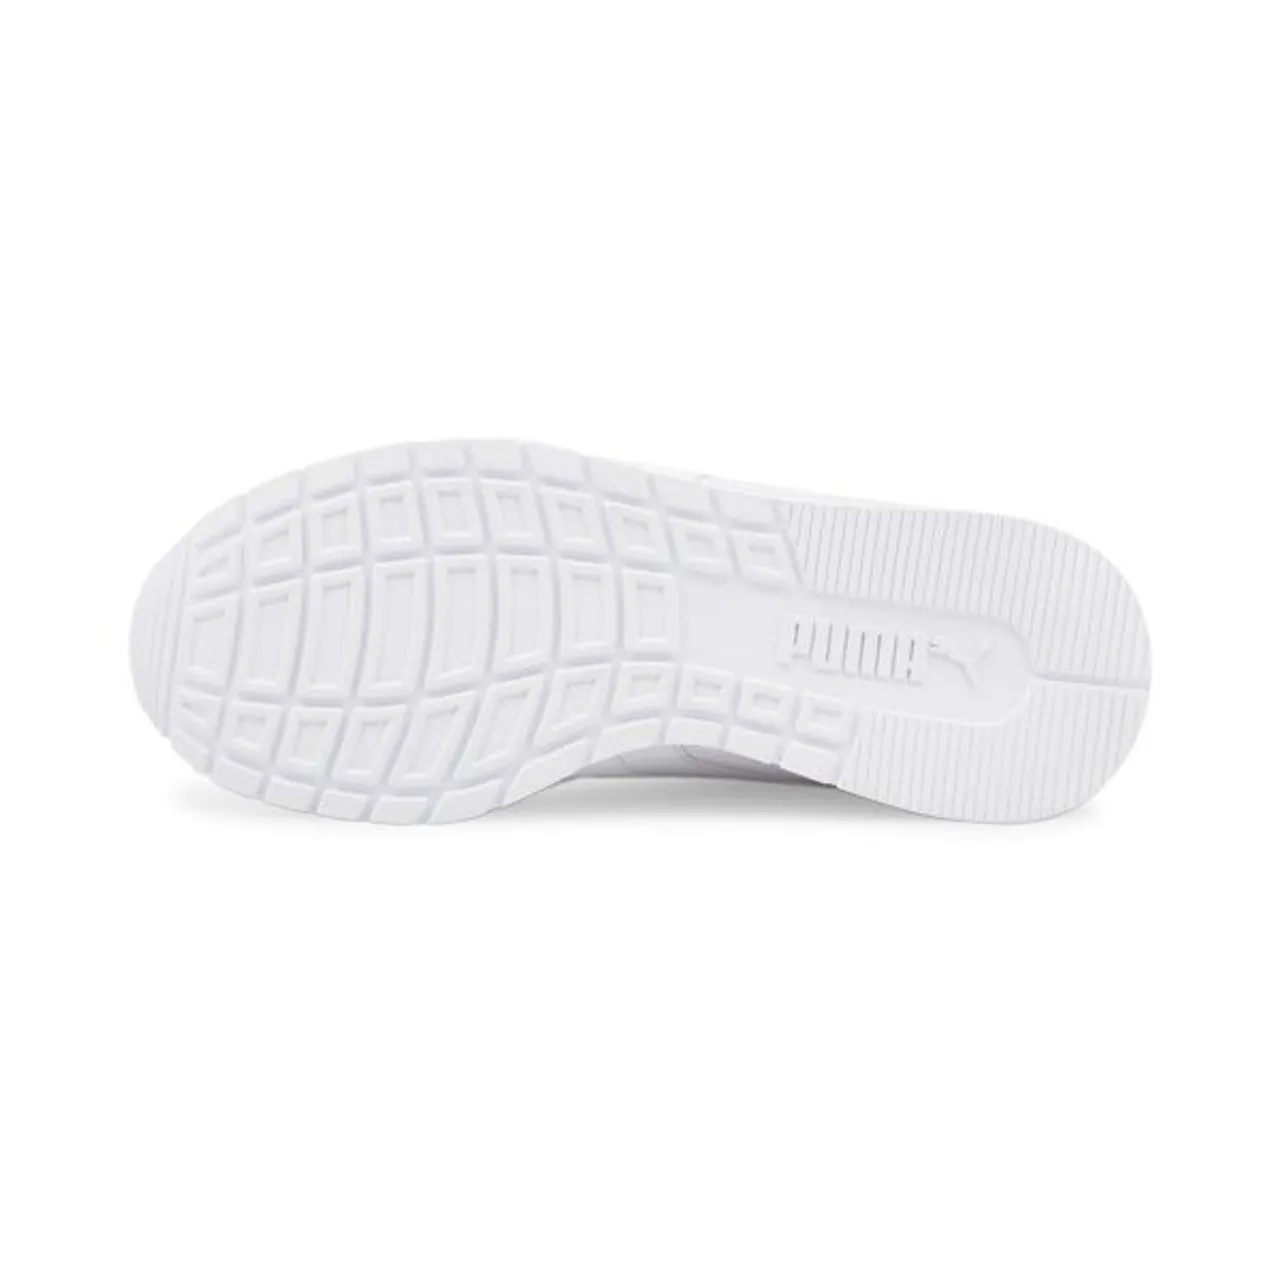 Sneaker PUMA "ST Runner v3 Leder-Sneakers Jugendliche" Gr. 36, weiß (white) Kinder Schuhe